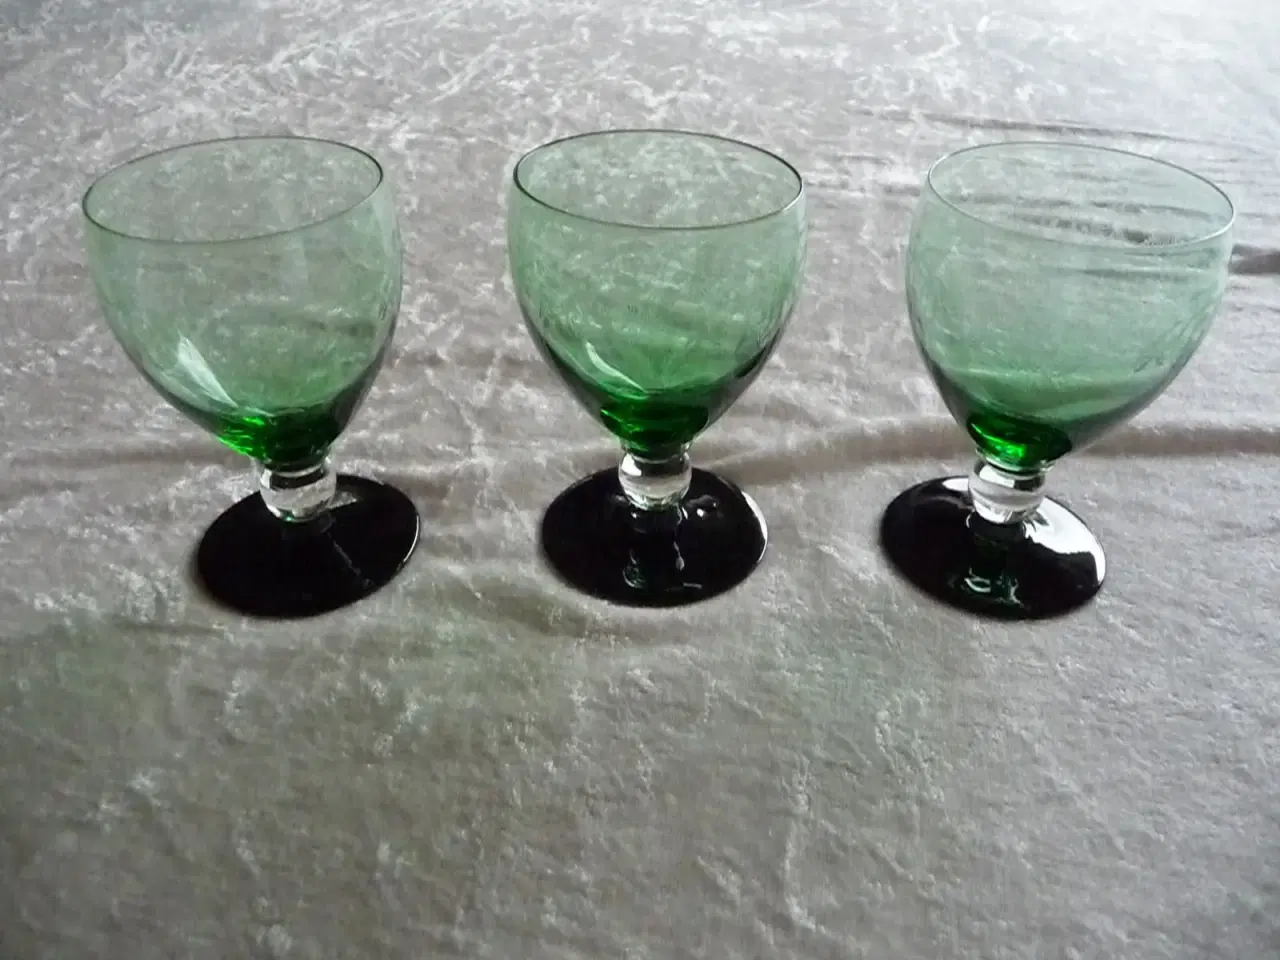 Billede 1 - 3 grøne glas med sort fod.